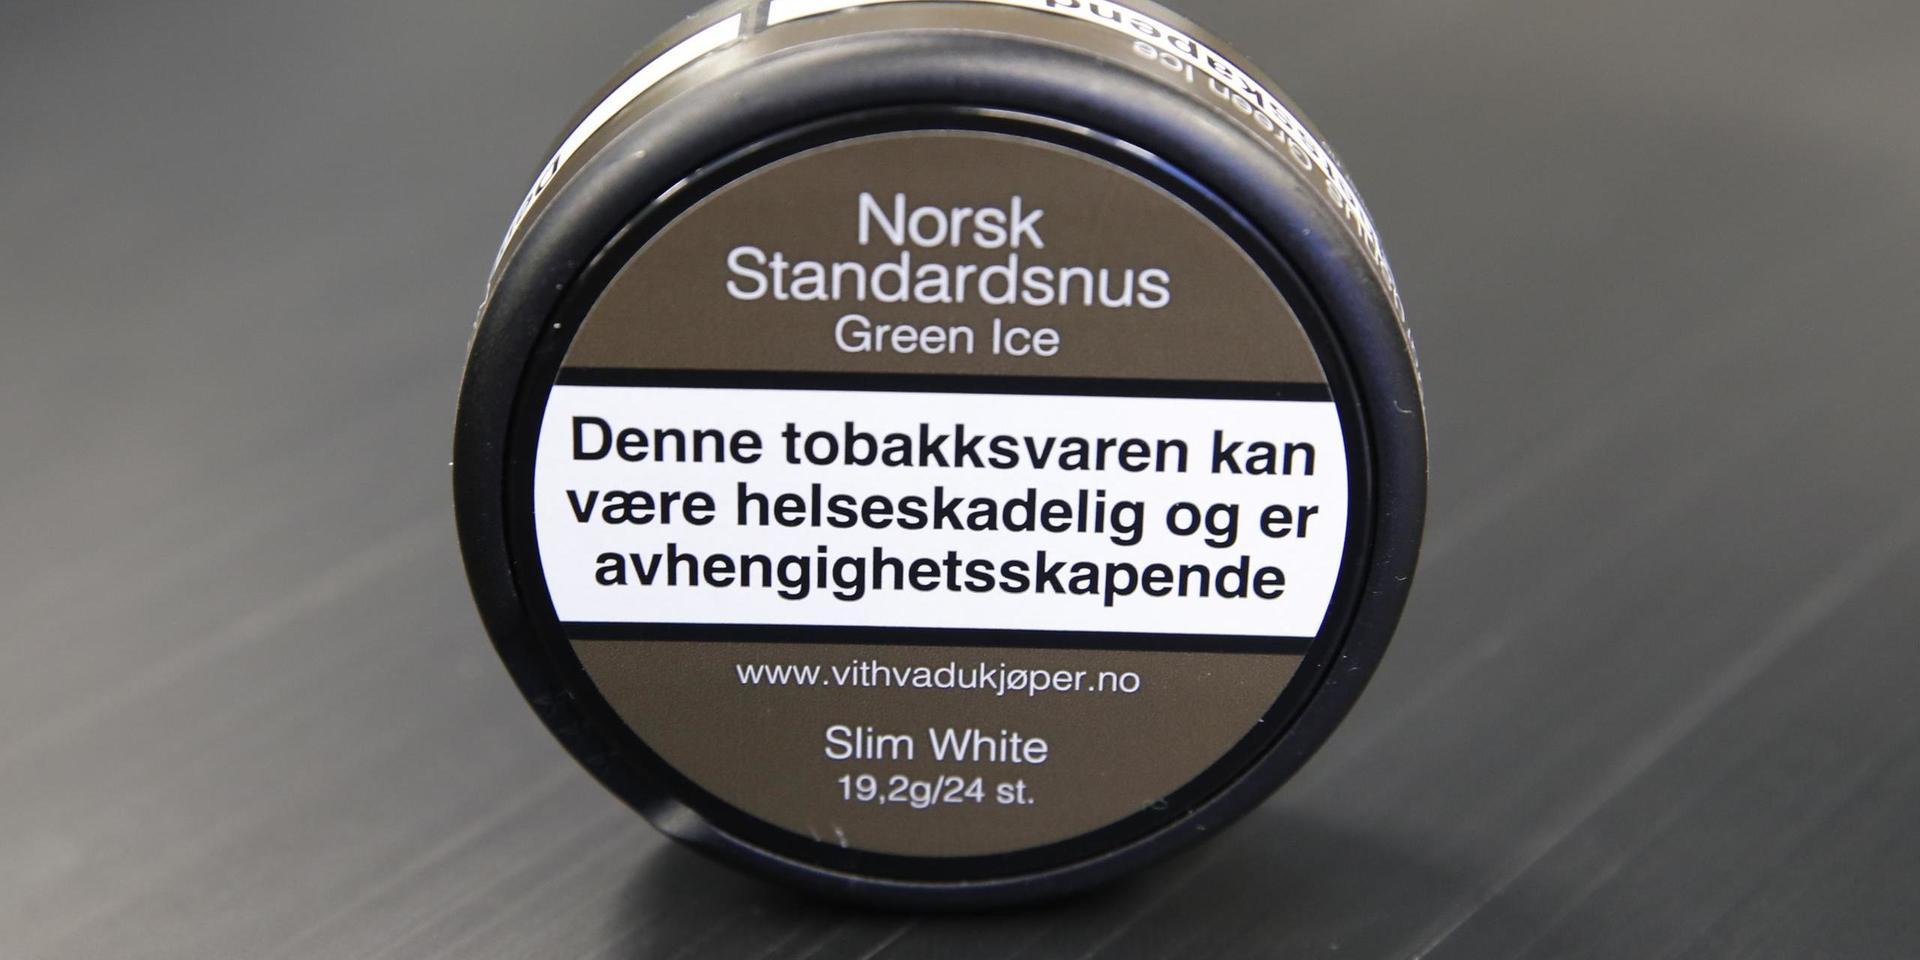 En norsk snusdosa, med godkänd varningstext. Arkivbild.